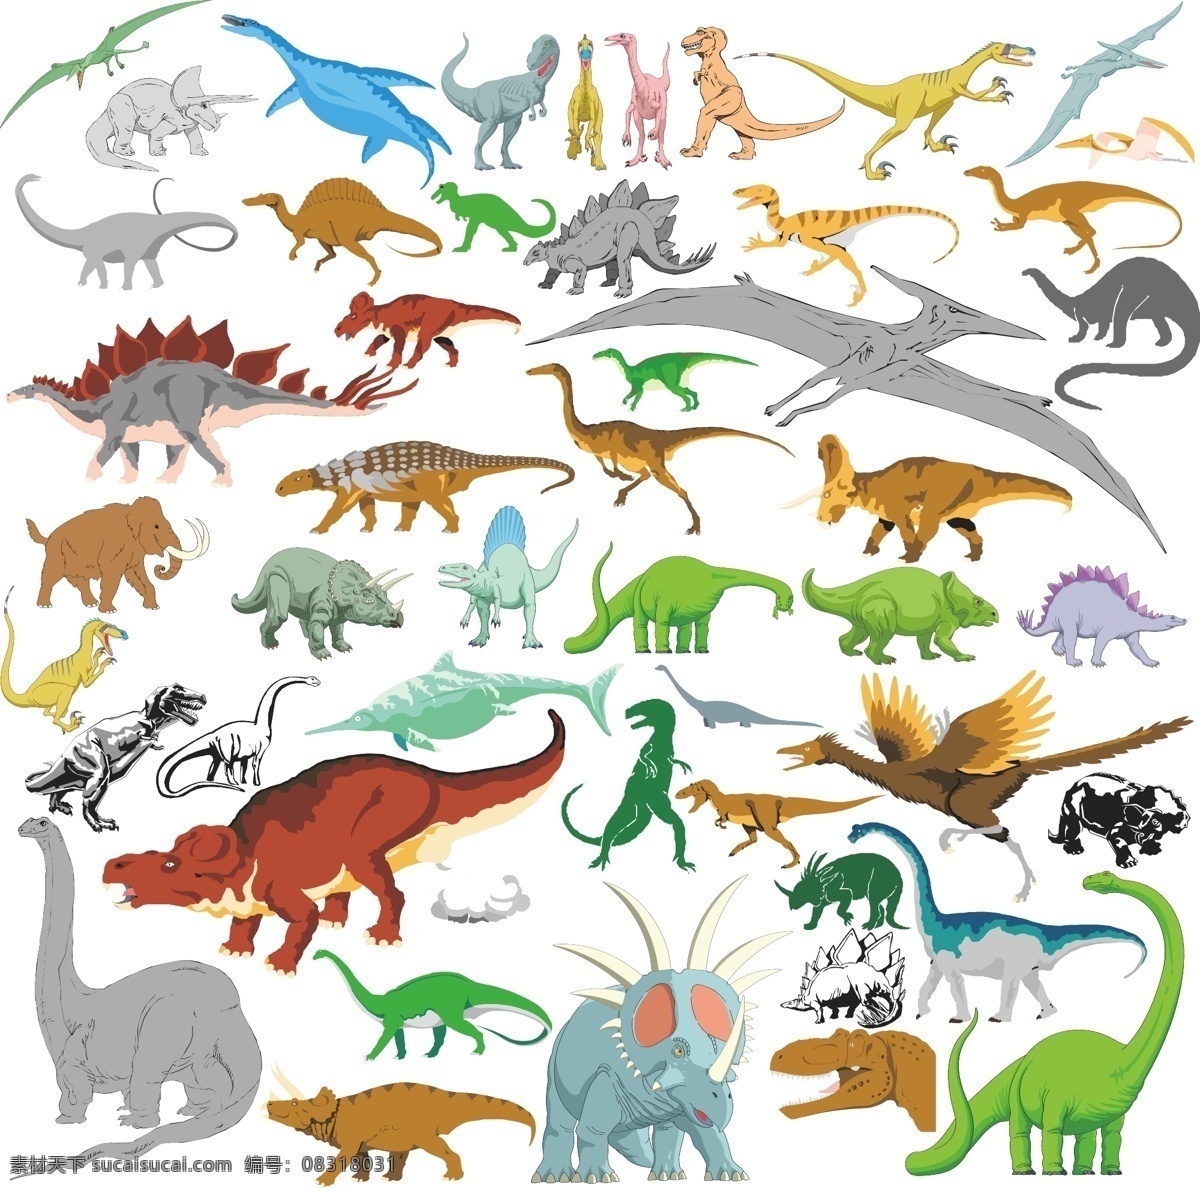 恐龙 翼 龙 霸王龙 图案 卡通 白垩纪 翼龙 中世纪 动物 动物图形元素 野生动物 生物世界 矢量